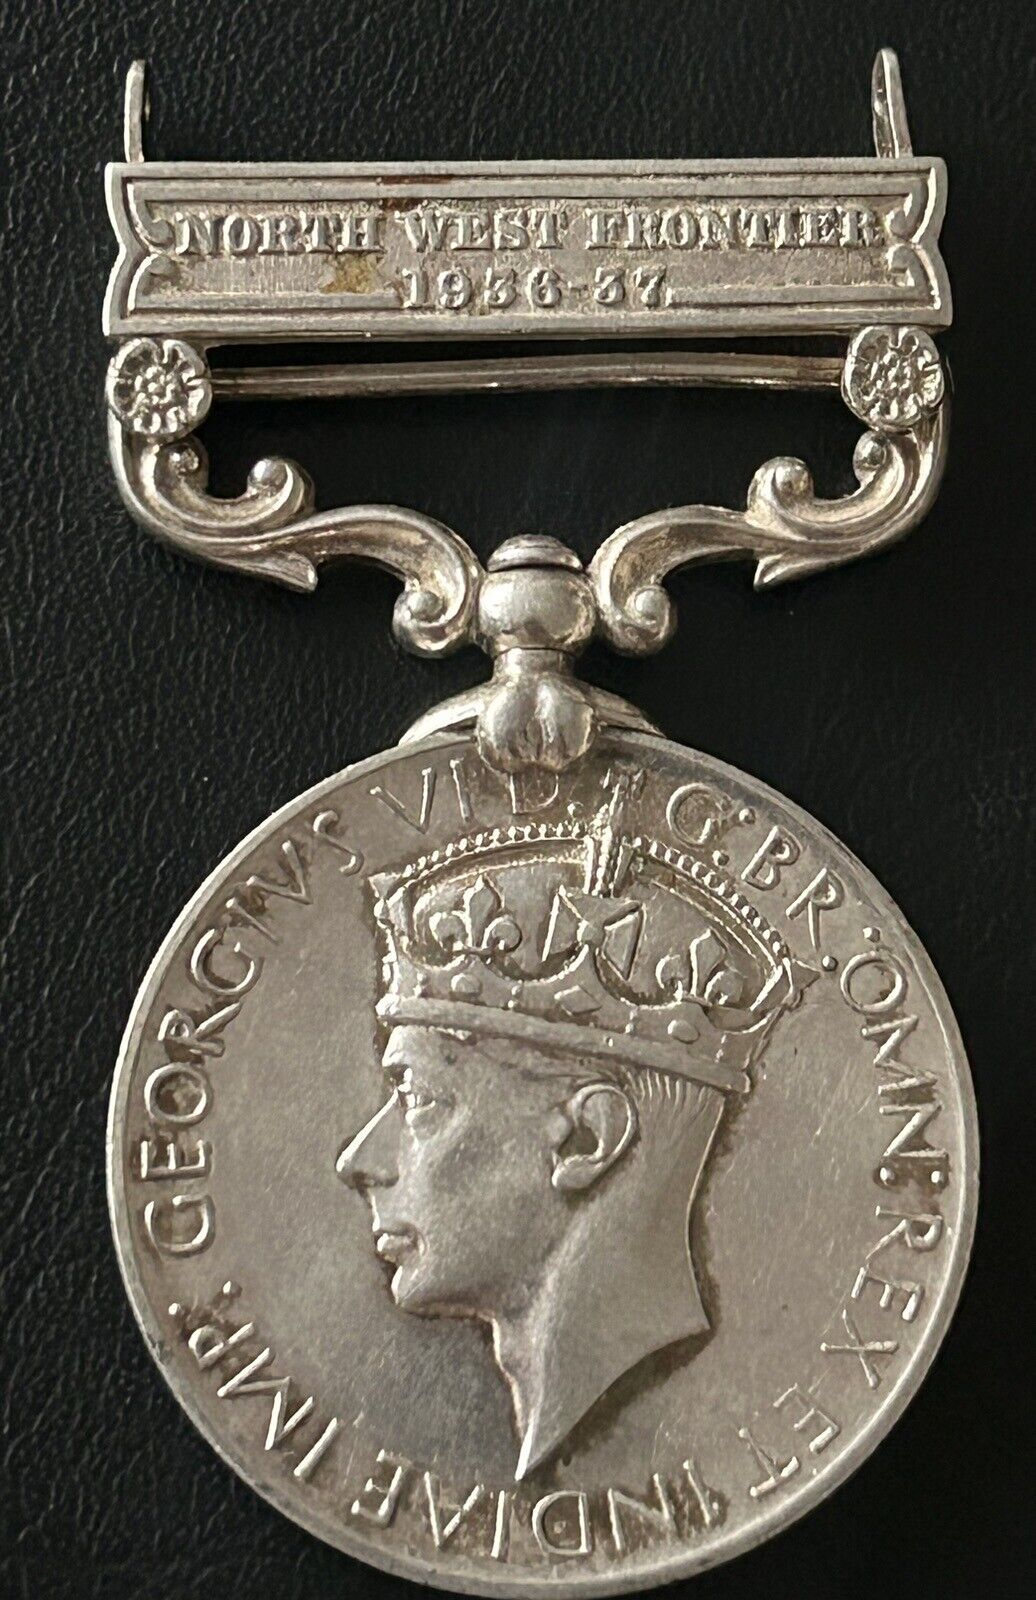 British India North West Frontier 1936-37 Medal Recipient See Description 